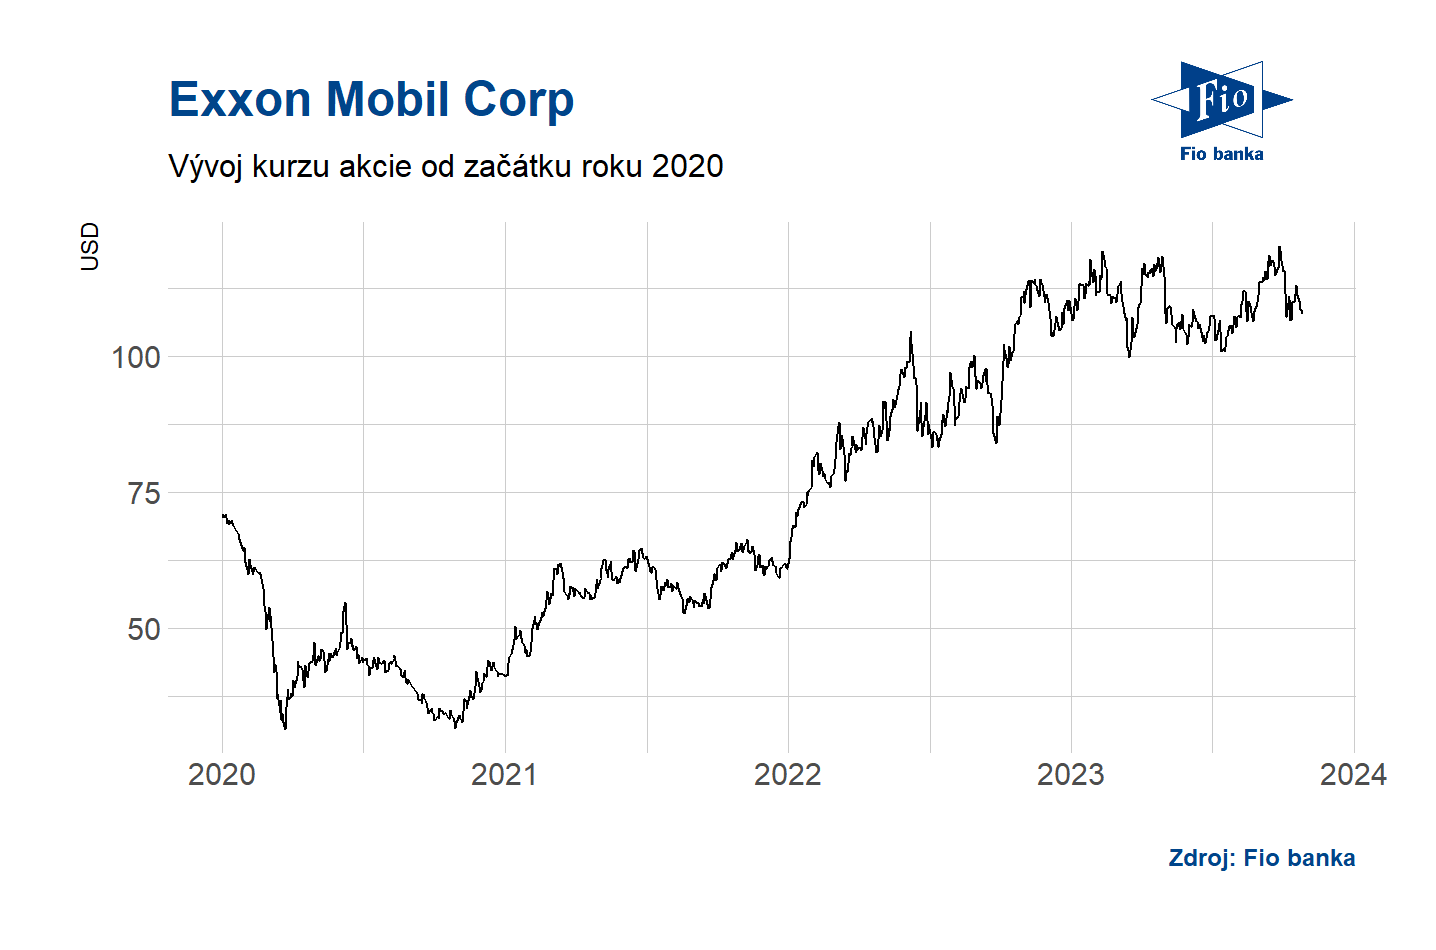 Vývoj akcie ExxonMobil.